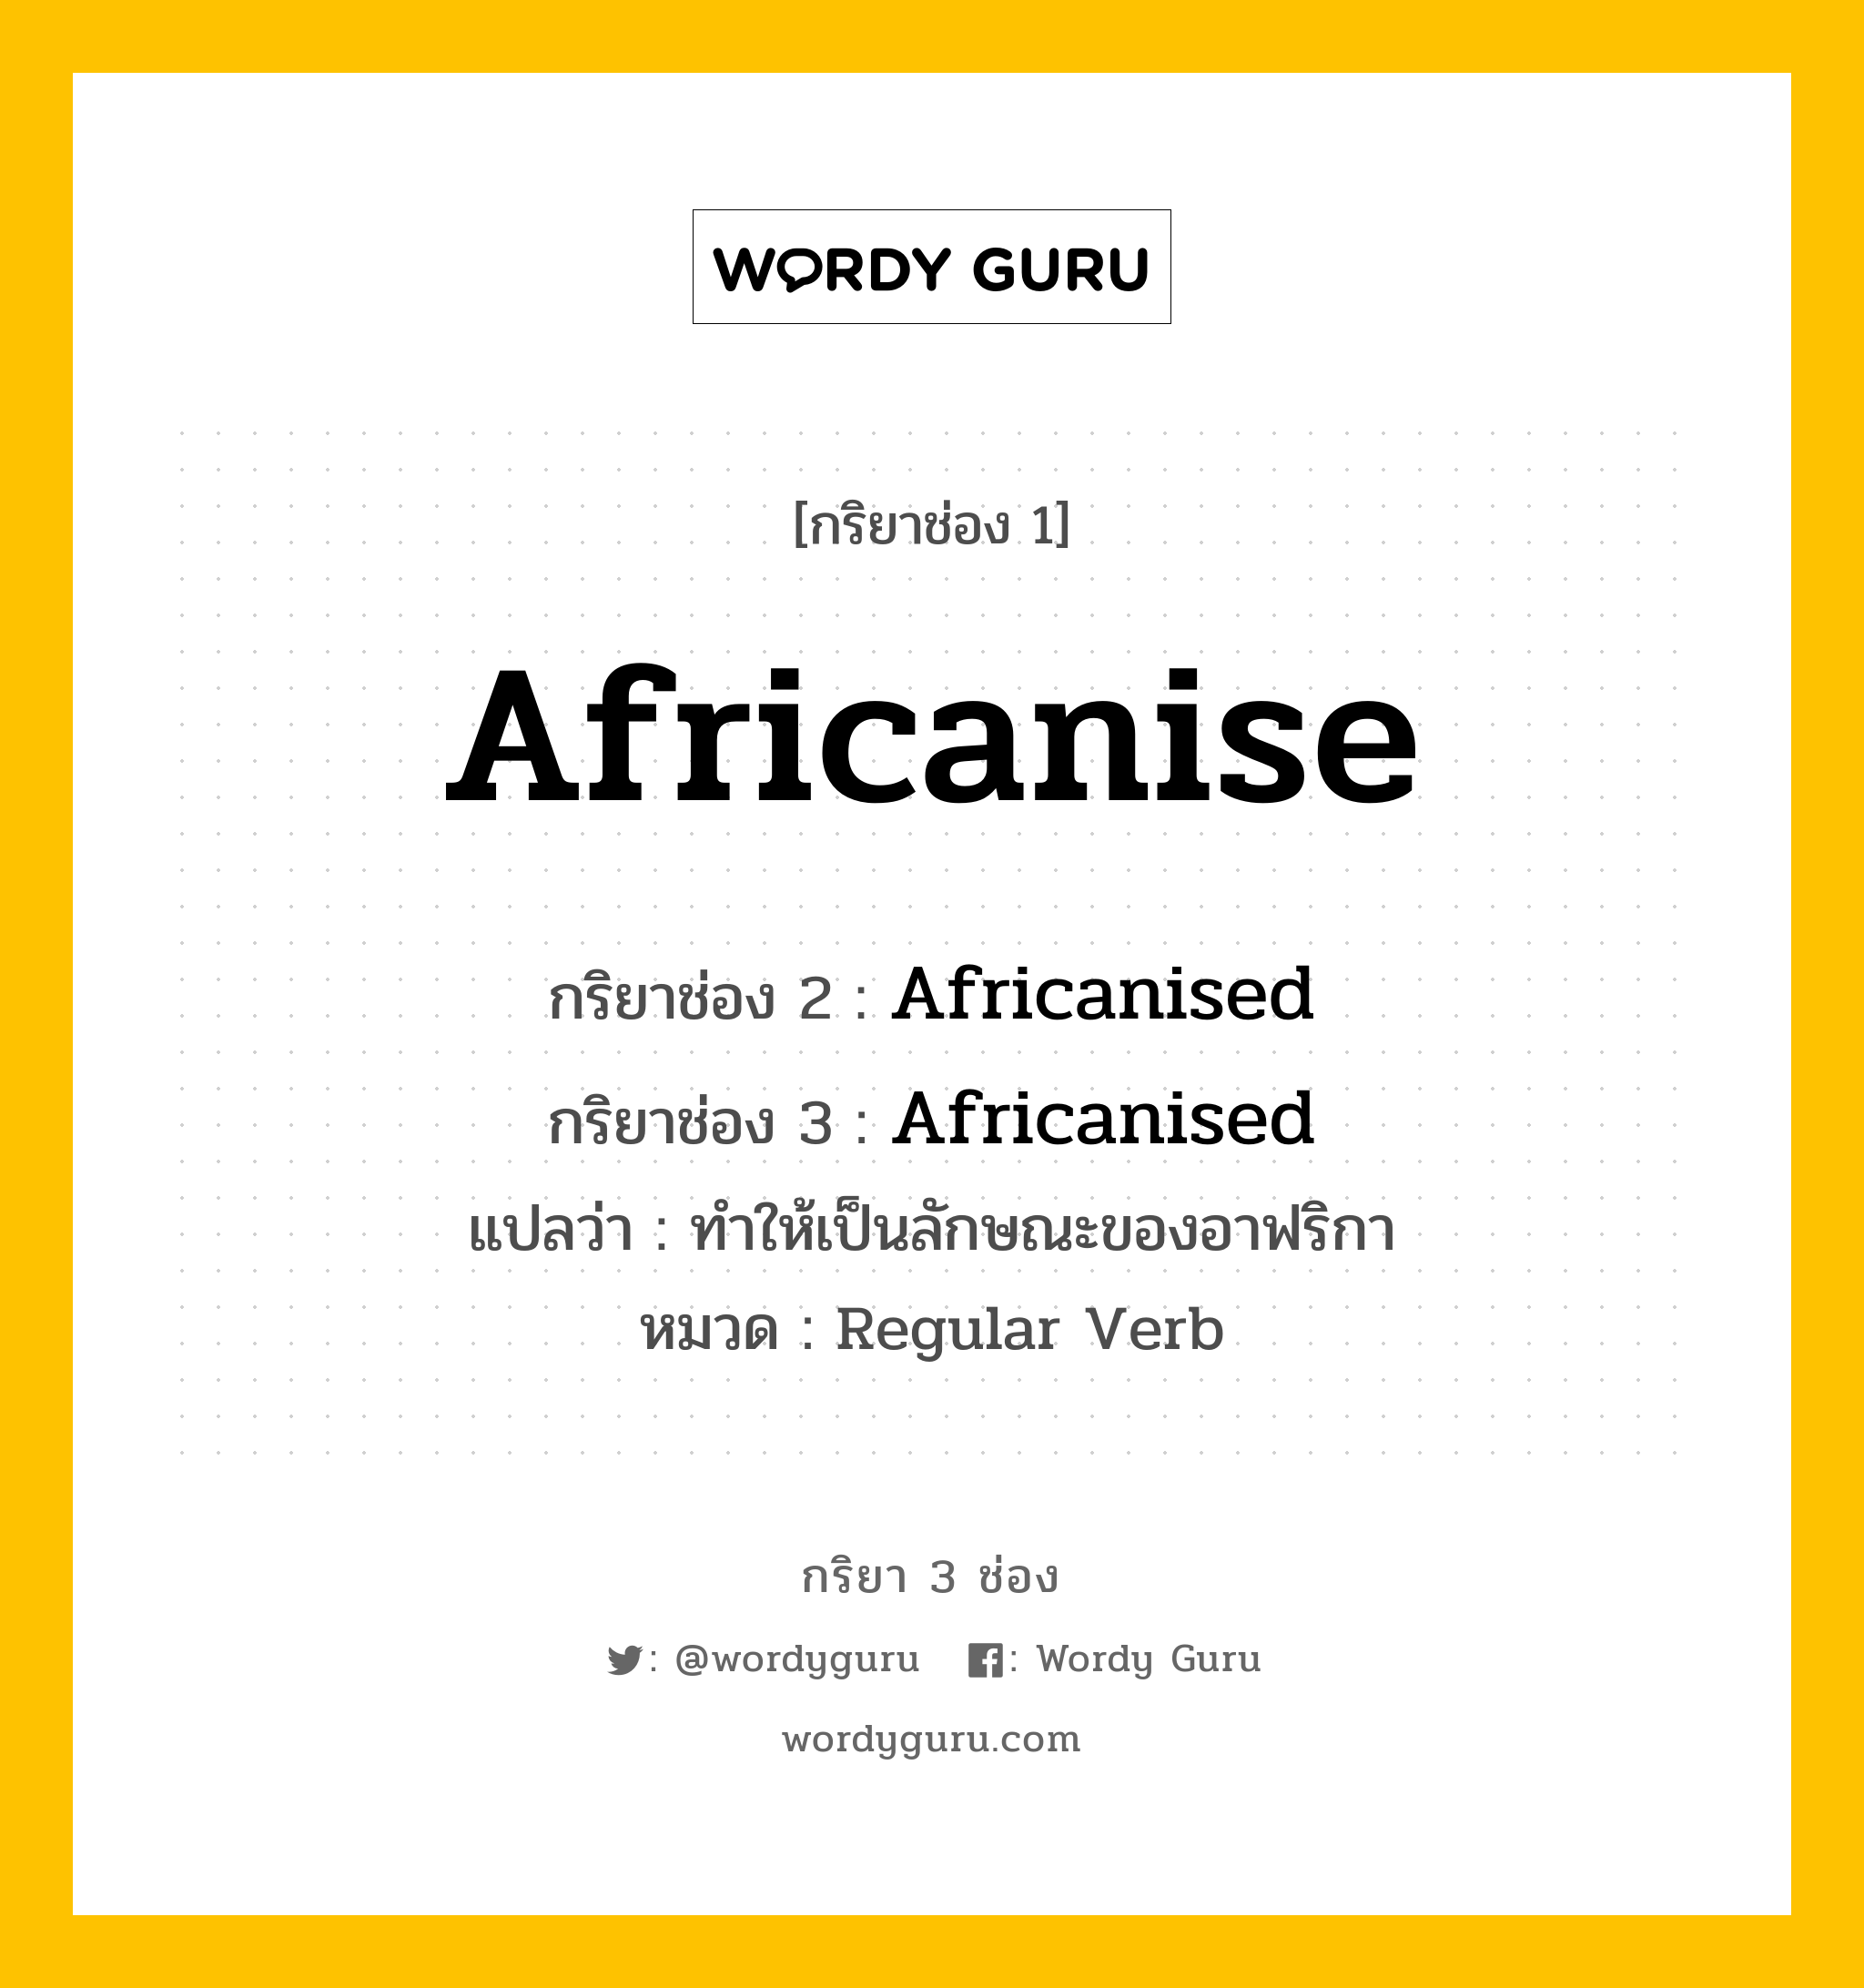 Africanise มีกริยา 3 ช่องอะไรบ้าง? คำศัพท์ในกลุ่มประเภท Regular Verb, กริยาช่อง 1 Africanise กริยาช่อง 2 Africanised กริยาช่อง 3 Africanised แปลว่า ทำให้เป็นลักษณะของอาฟริกา หมวด Regular Verb หมวด Regular Verb